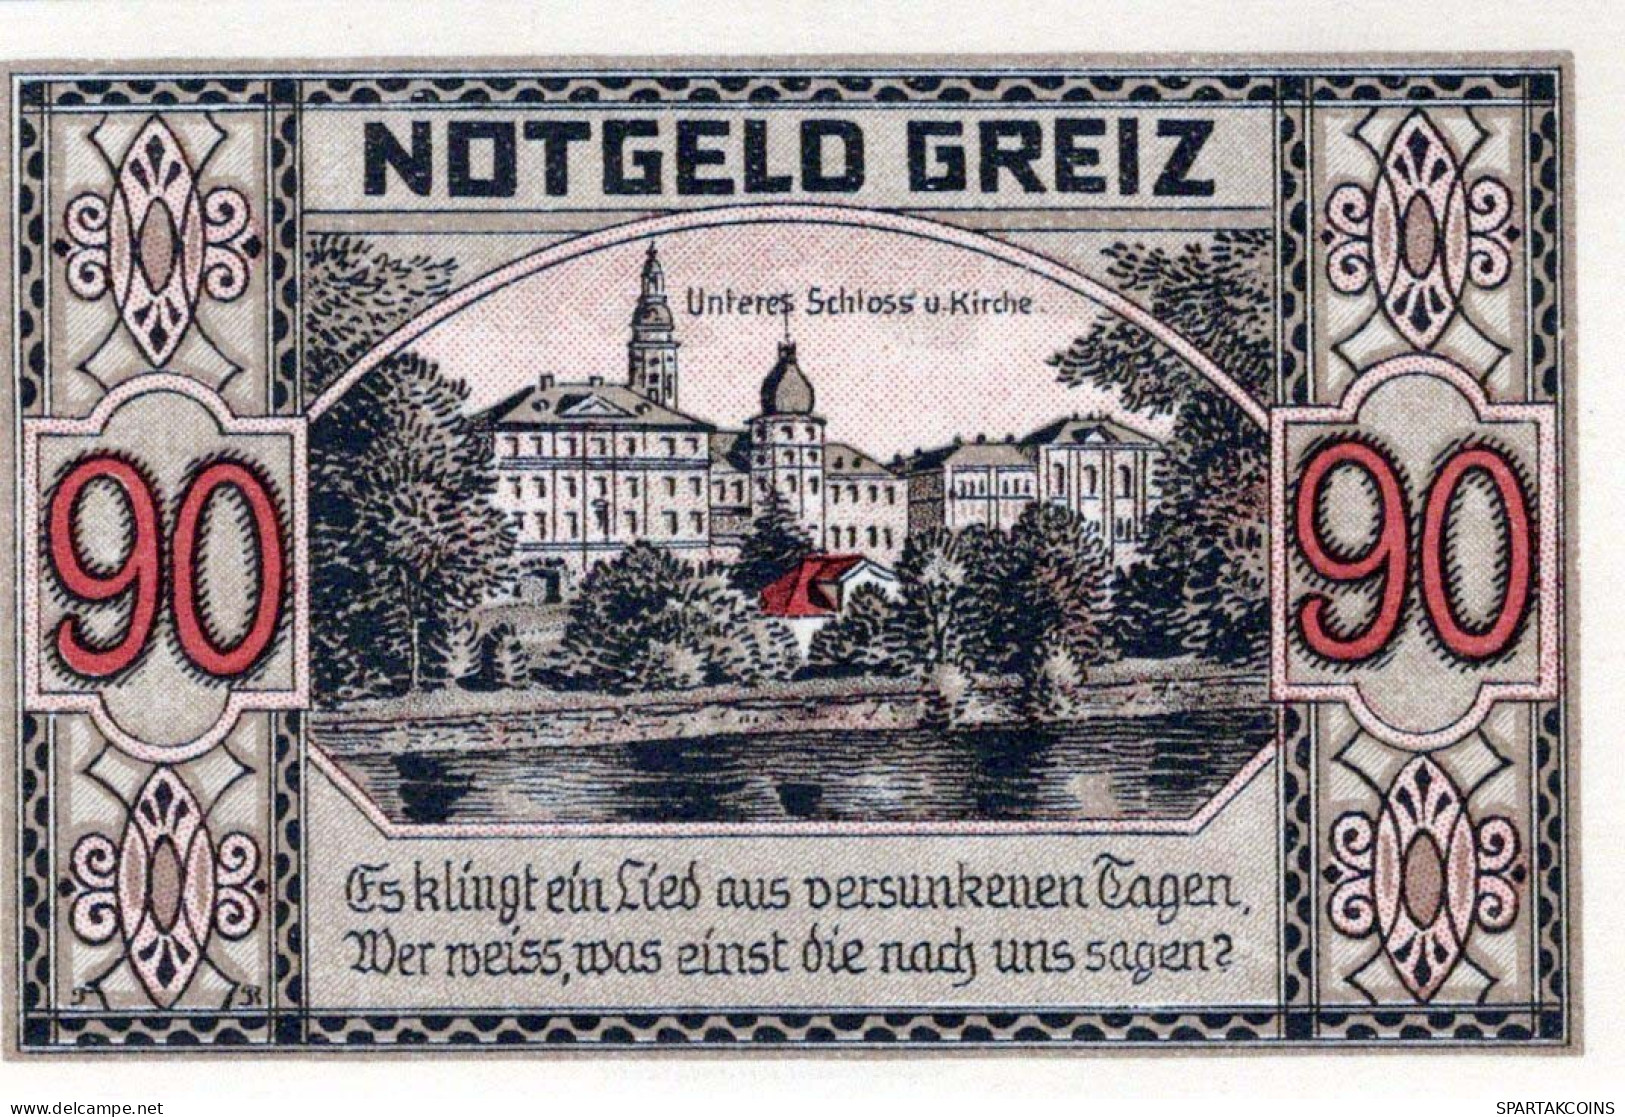 90 PFENNIG 1921 Stadt GREIZ Thuringia UNC DEUTSCHLAND Notgeld Banknote #PH700 - [11] Emissioni Locali